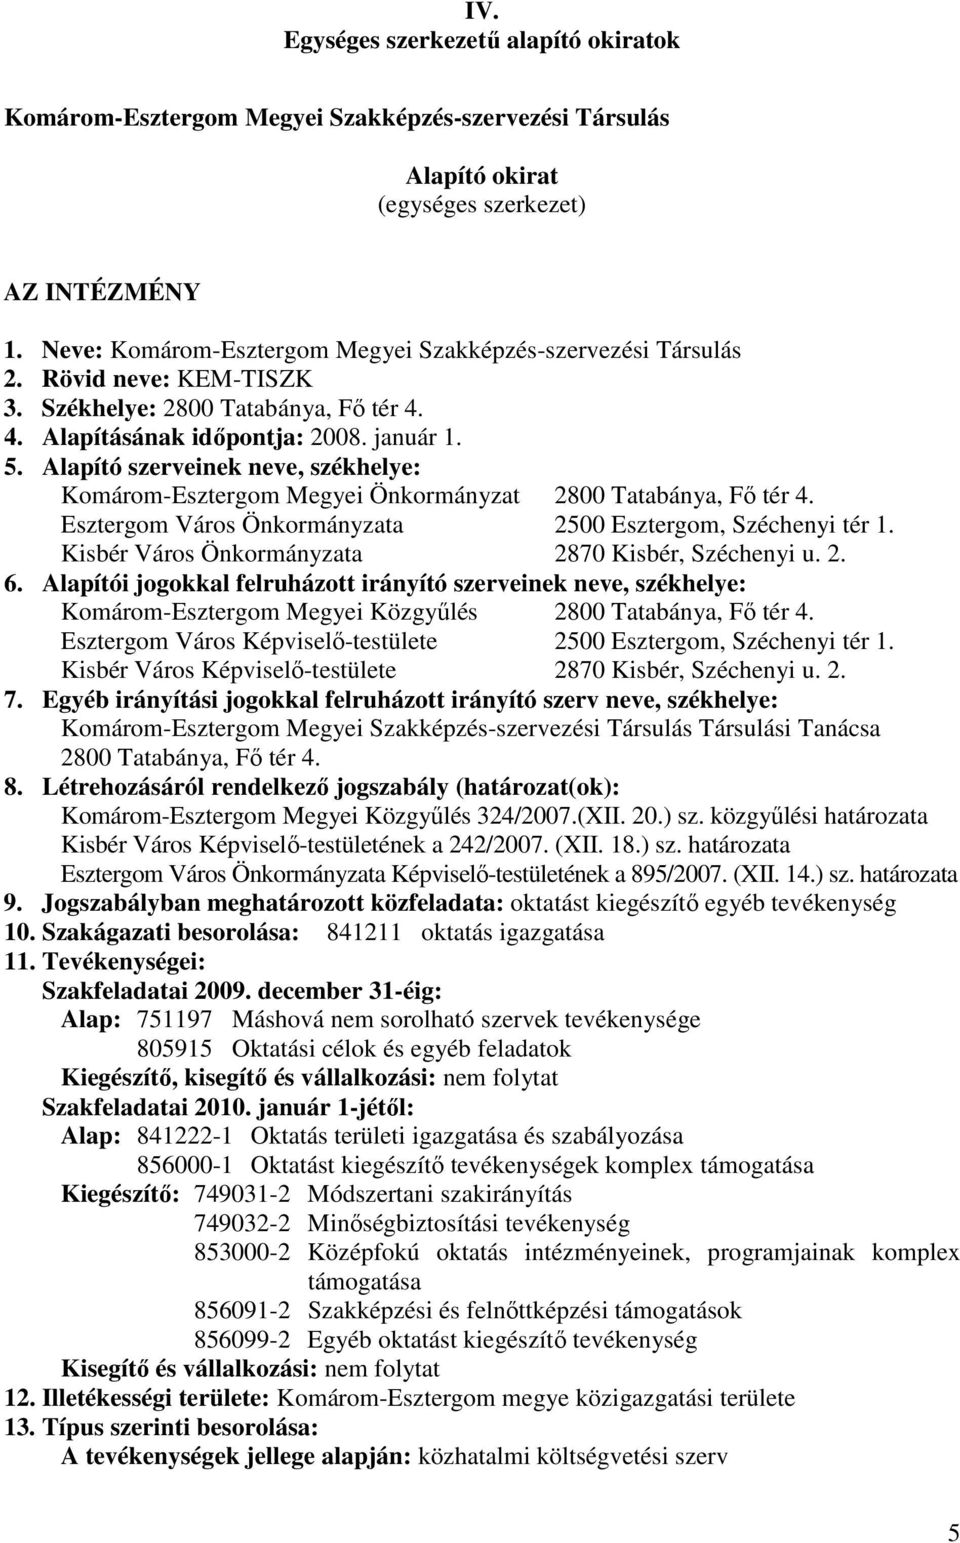 Alapító szerveinek neve, székhelye: Komárom-Esztergom Megyei Önkormányzat 2800 Tatabánya, Fı tér 4. Esztergom Város Önkormányzata 2500 Esztergom, Széchenyi tér 1.